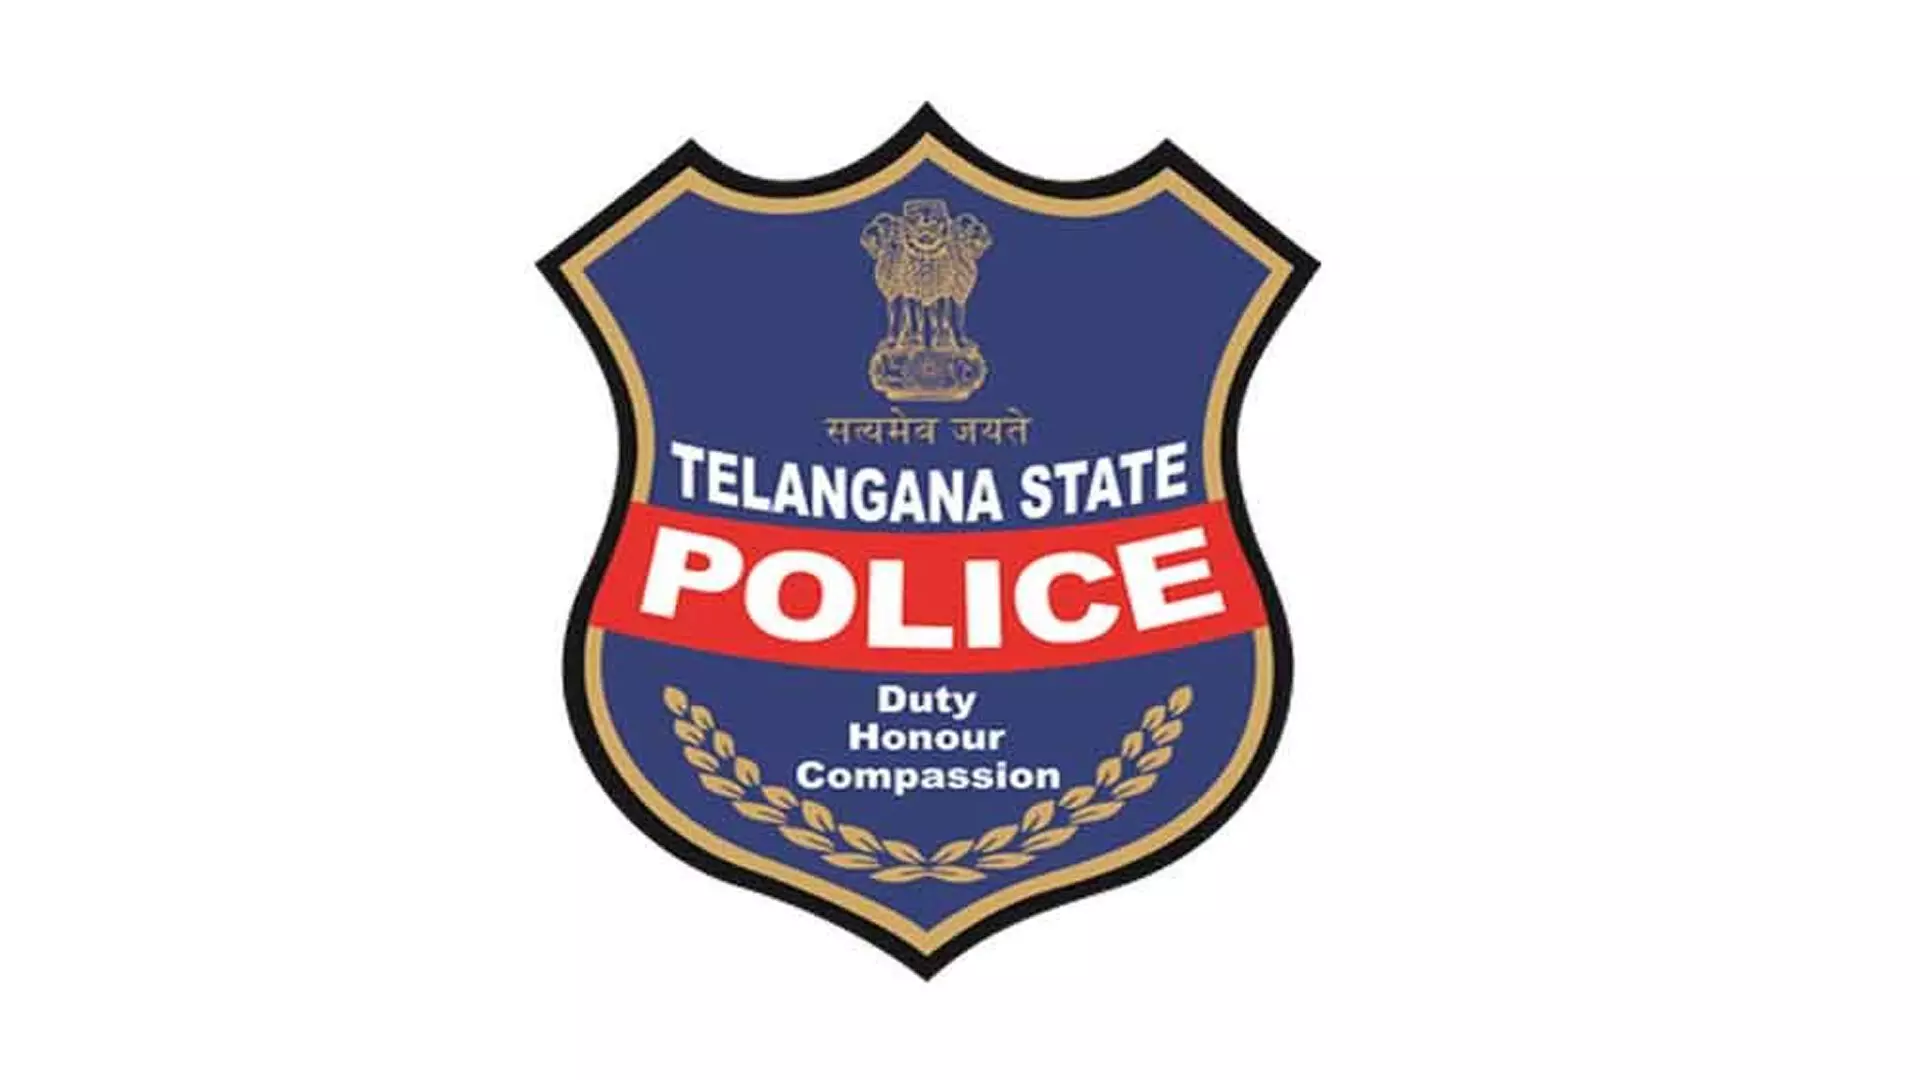 ऑल इंडिया पुलिस ड्यूटी मीट में तेलंगाना पुलिस का उत्कृष्ट प्रदर्शन